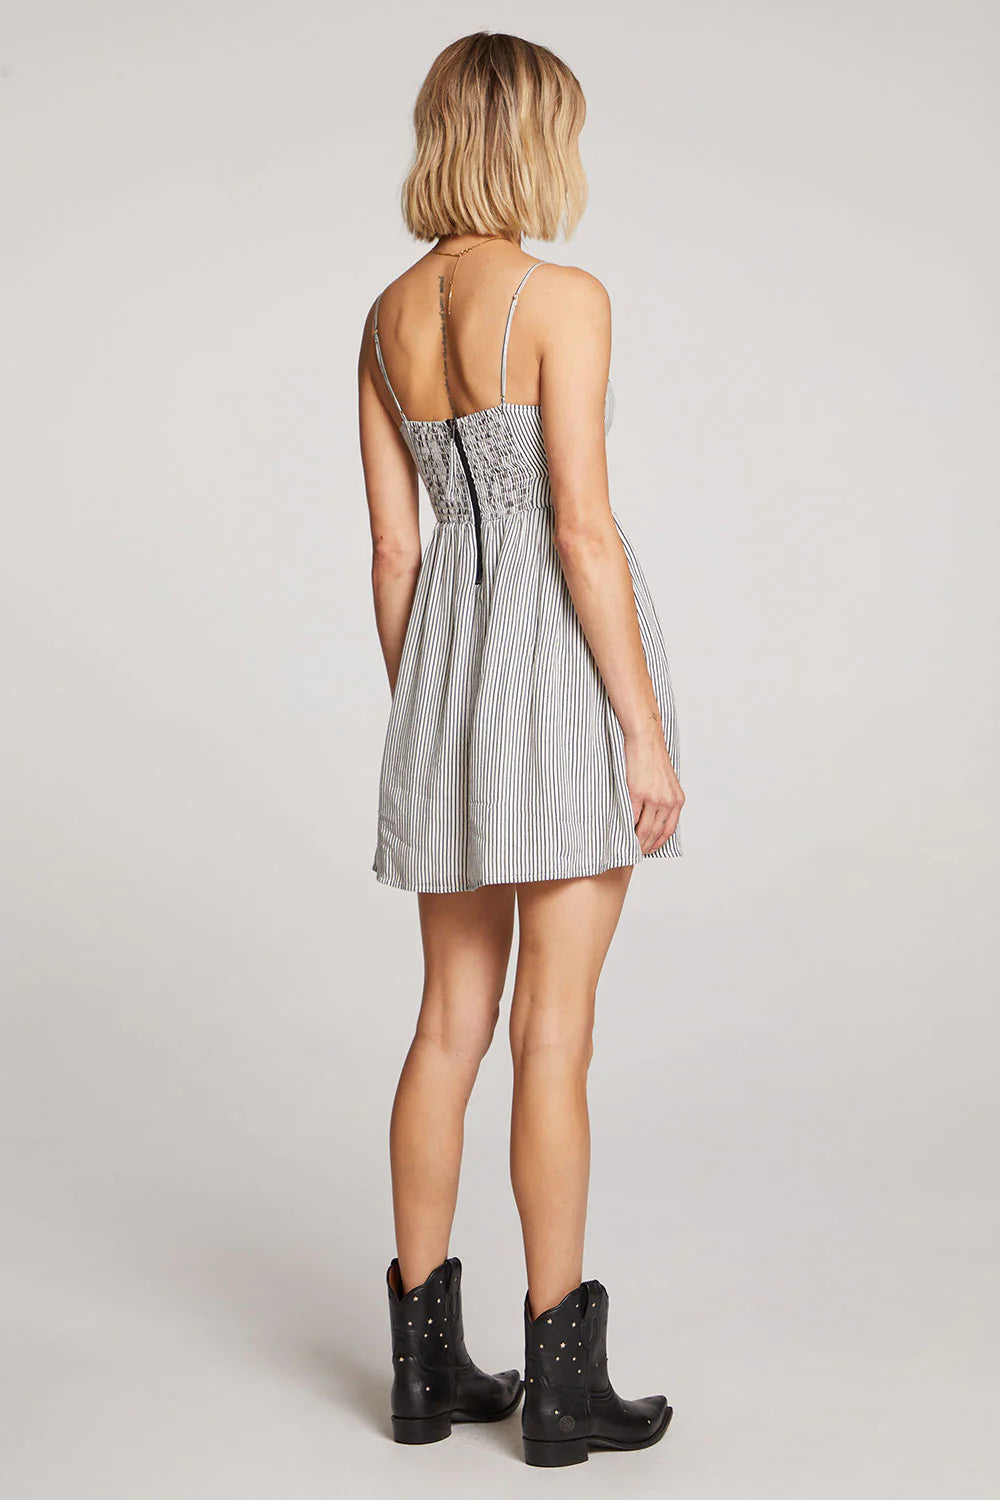 Dresses - Saltwater Luxe - Juneau Stripe Mini Dress - PLENTY